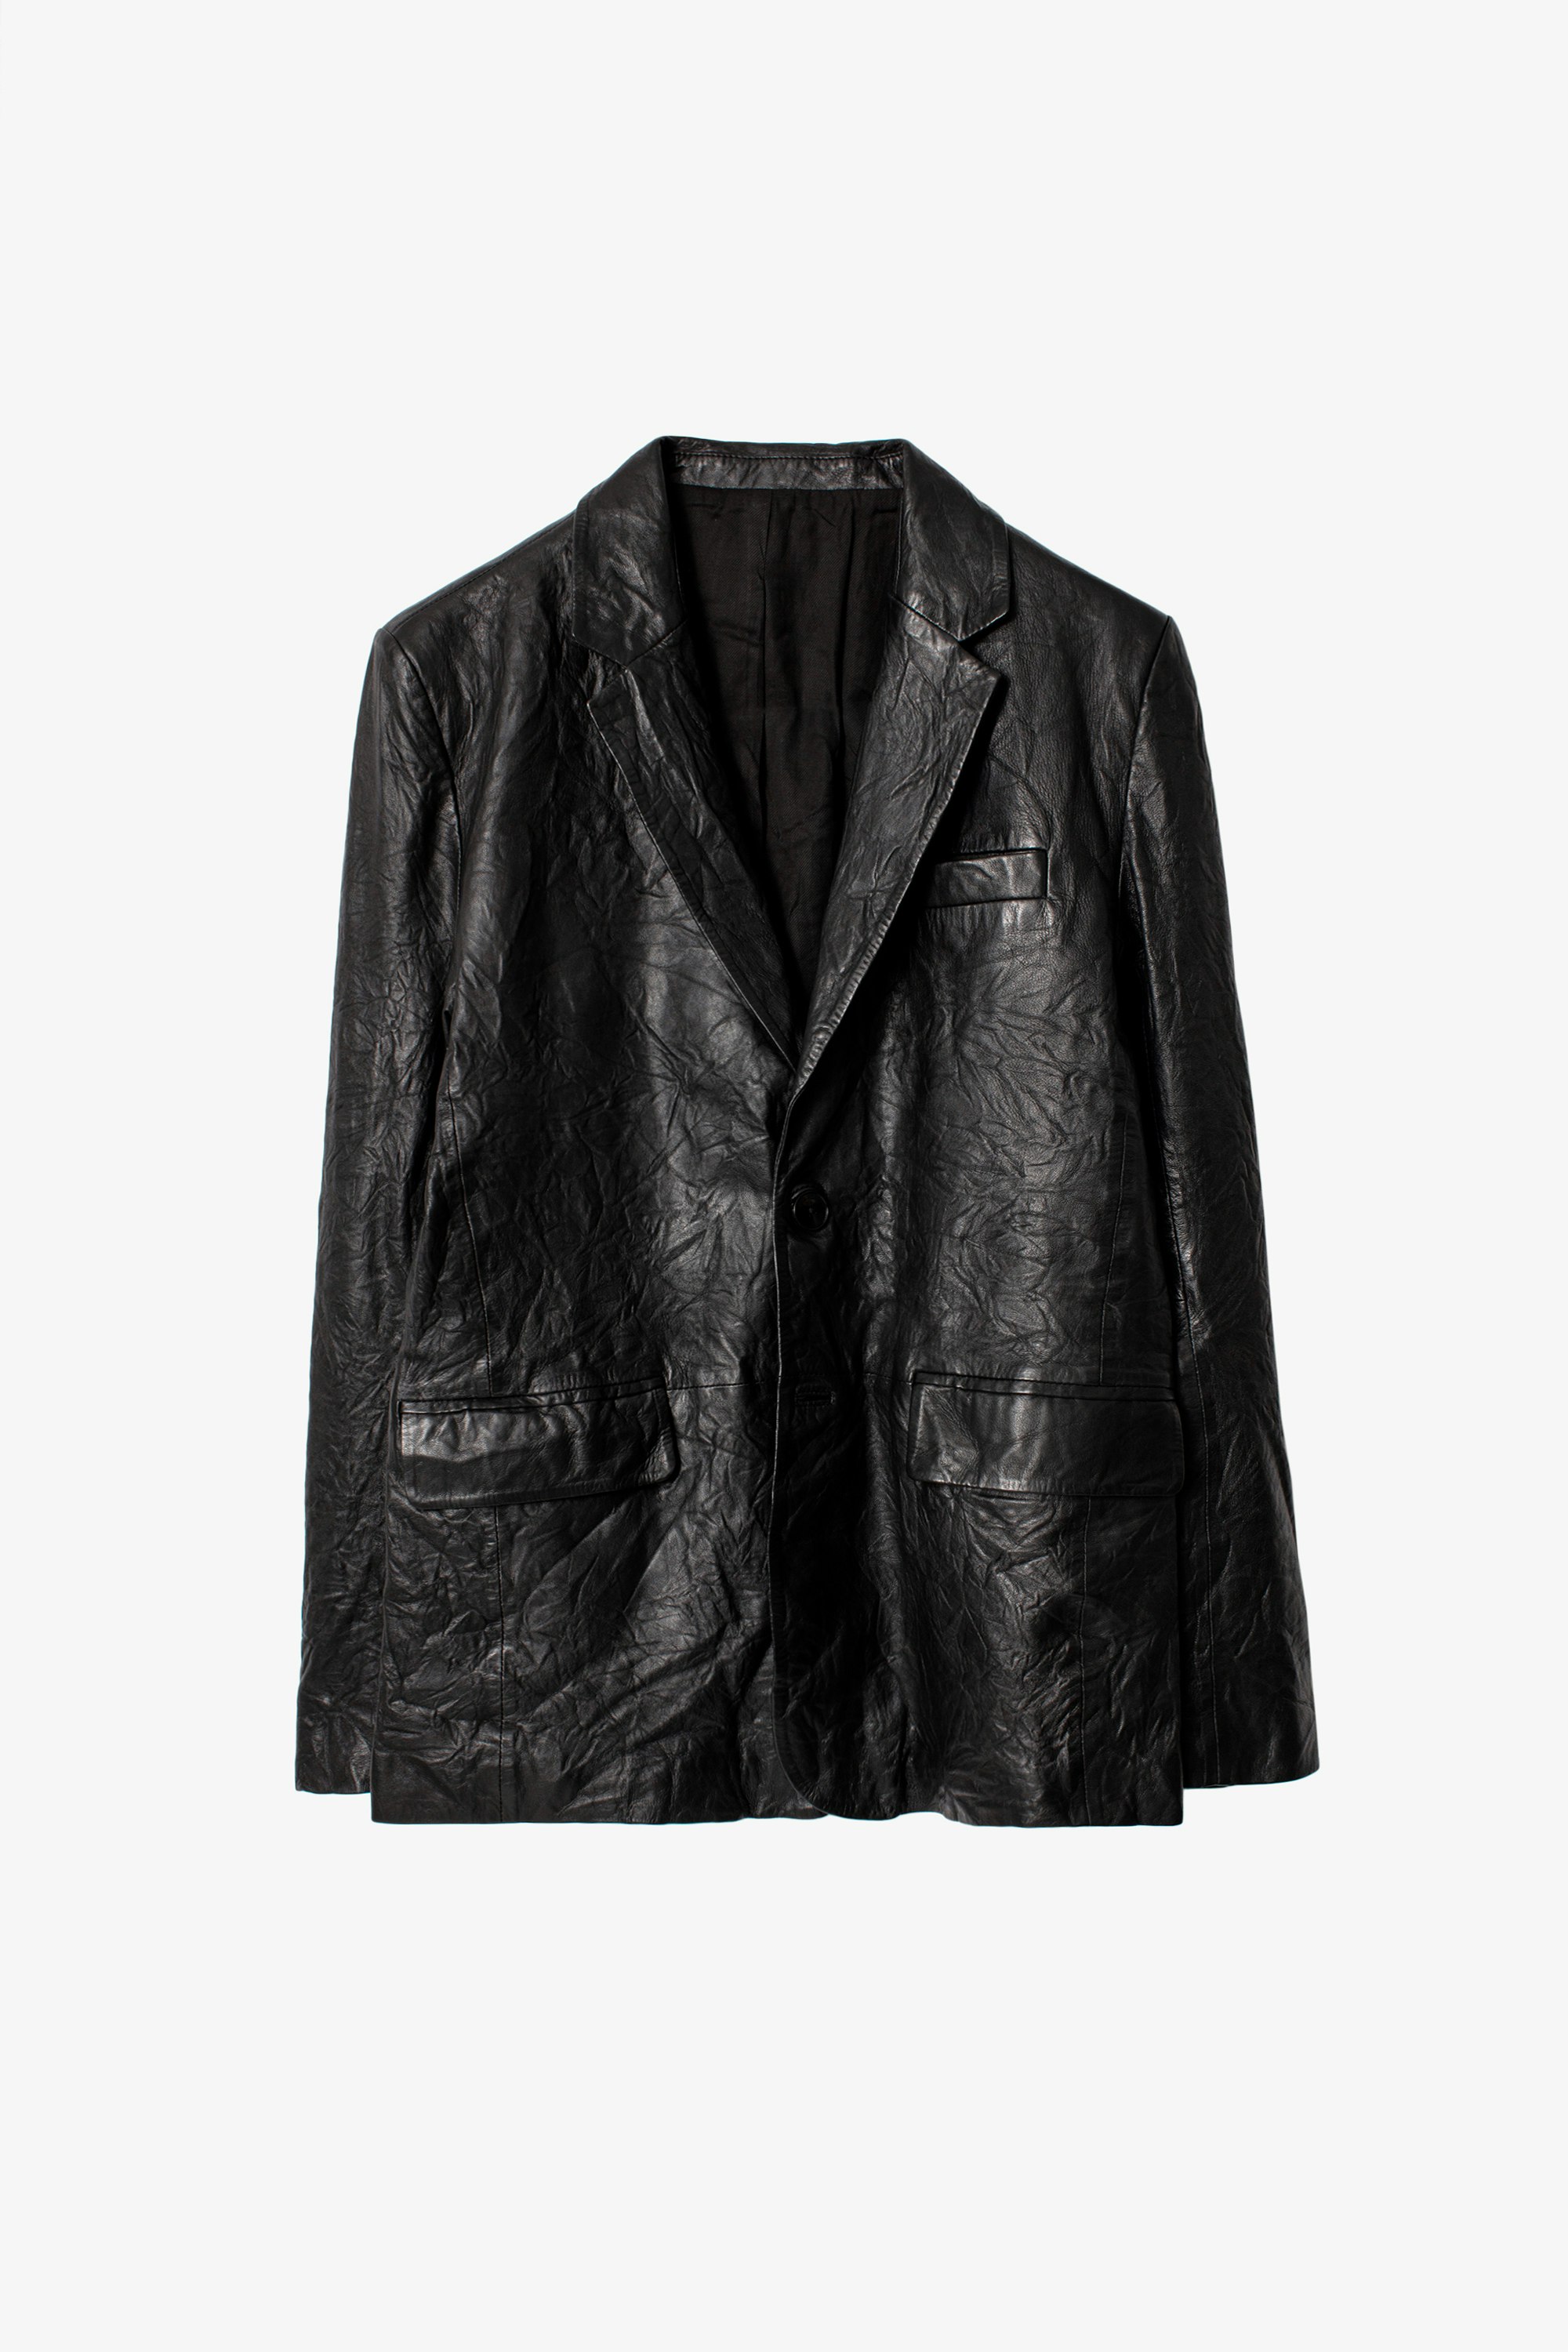 Blazer Valfried Crinkle Leather - Giacca nera da completo in pelle stropicciata.